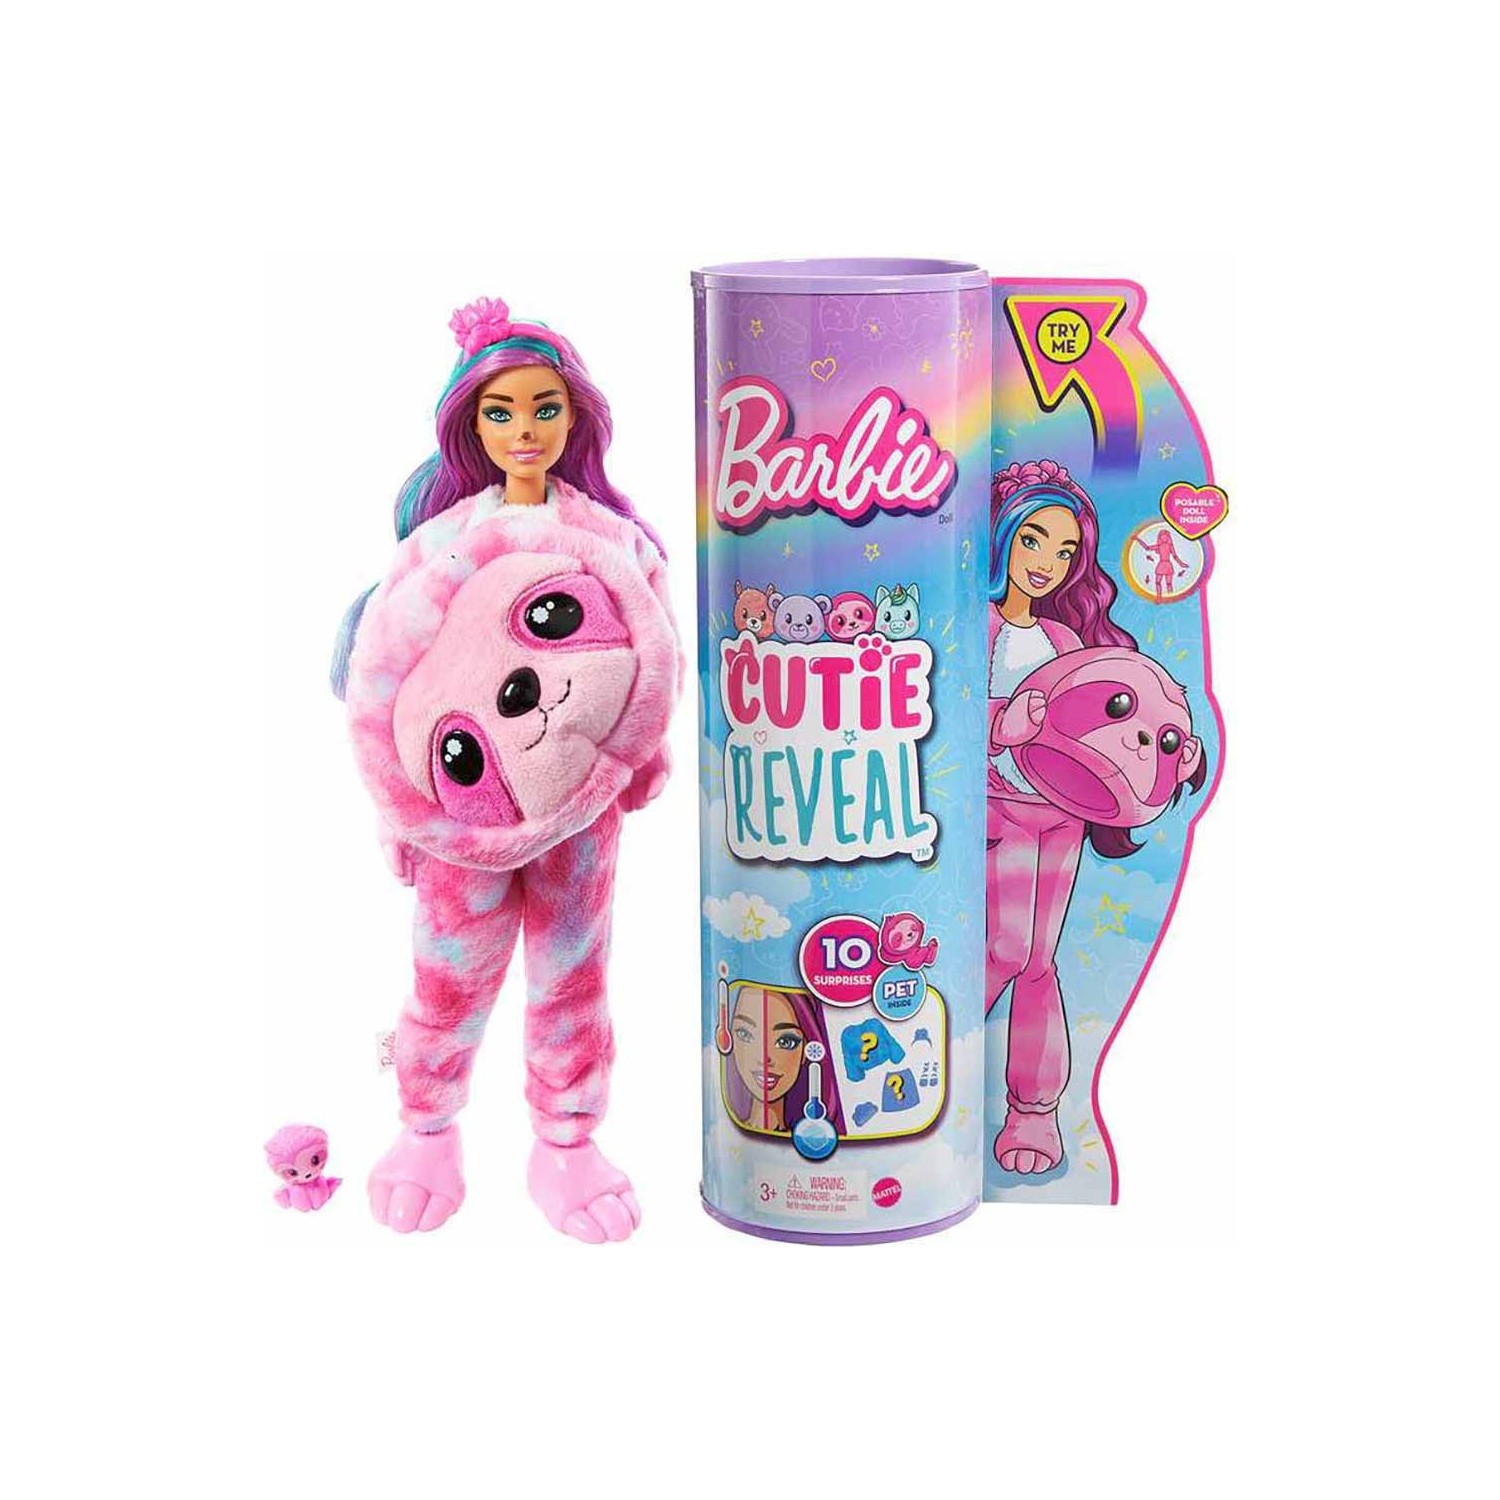 Кукла Barbie Cutie Reveal цветочный ленивец HJL56 кукла barbie cutie reveal kitten с сюрпризами 29 см hhg20